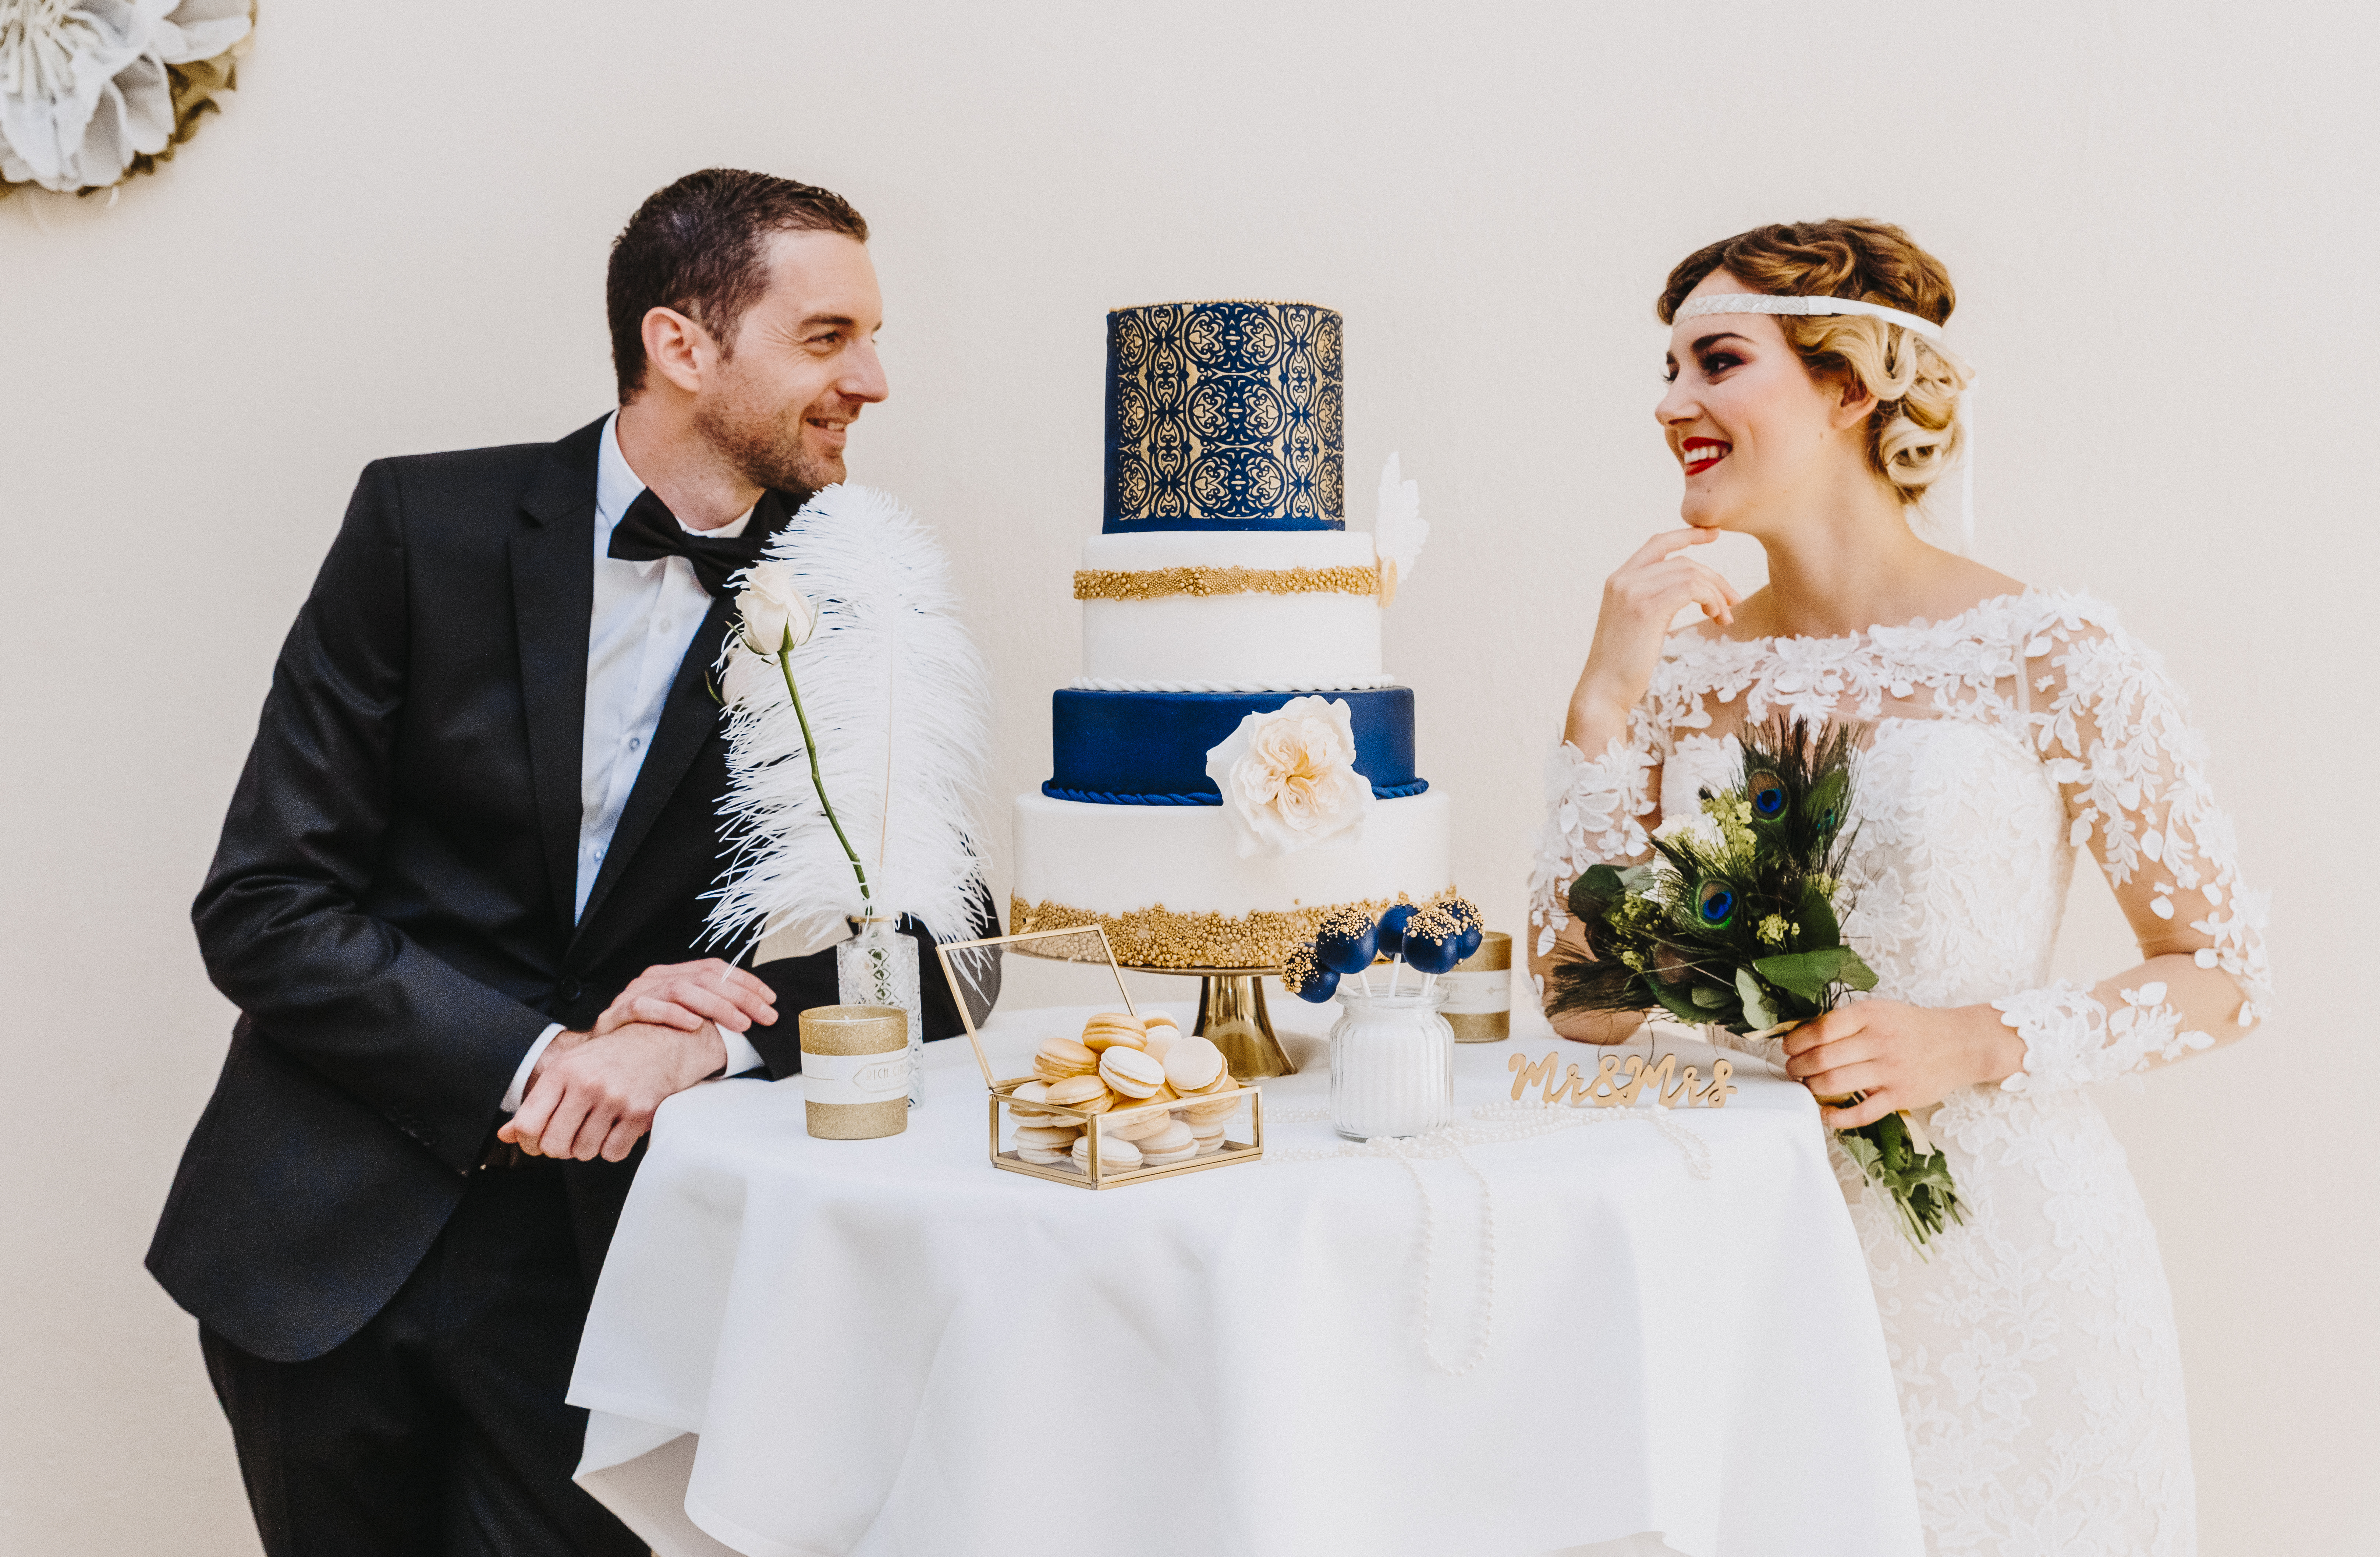 Styled Wedding Shoot © Maren van Meer Photodesign 2019 (33)